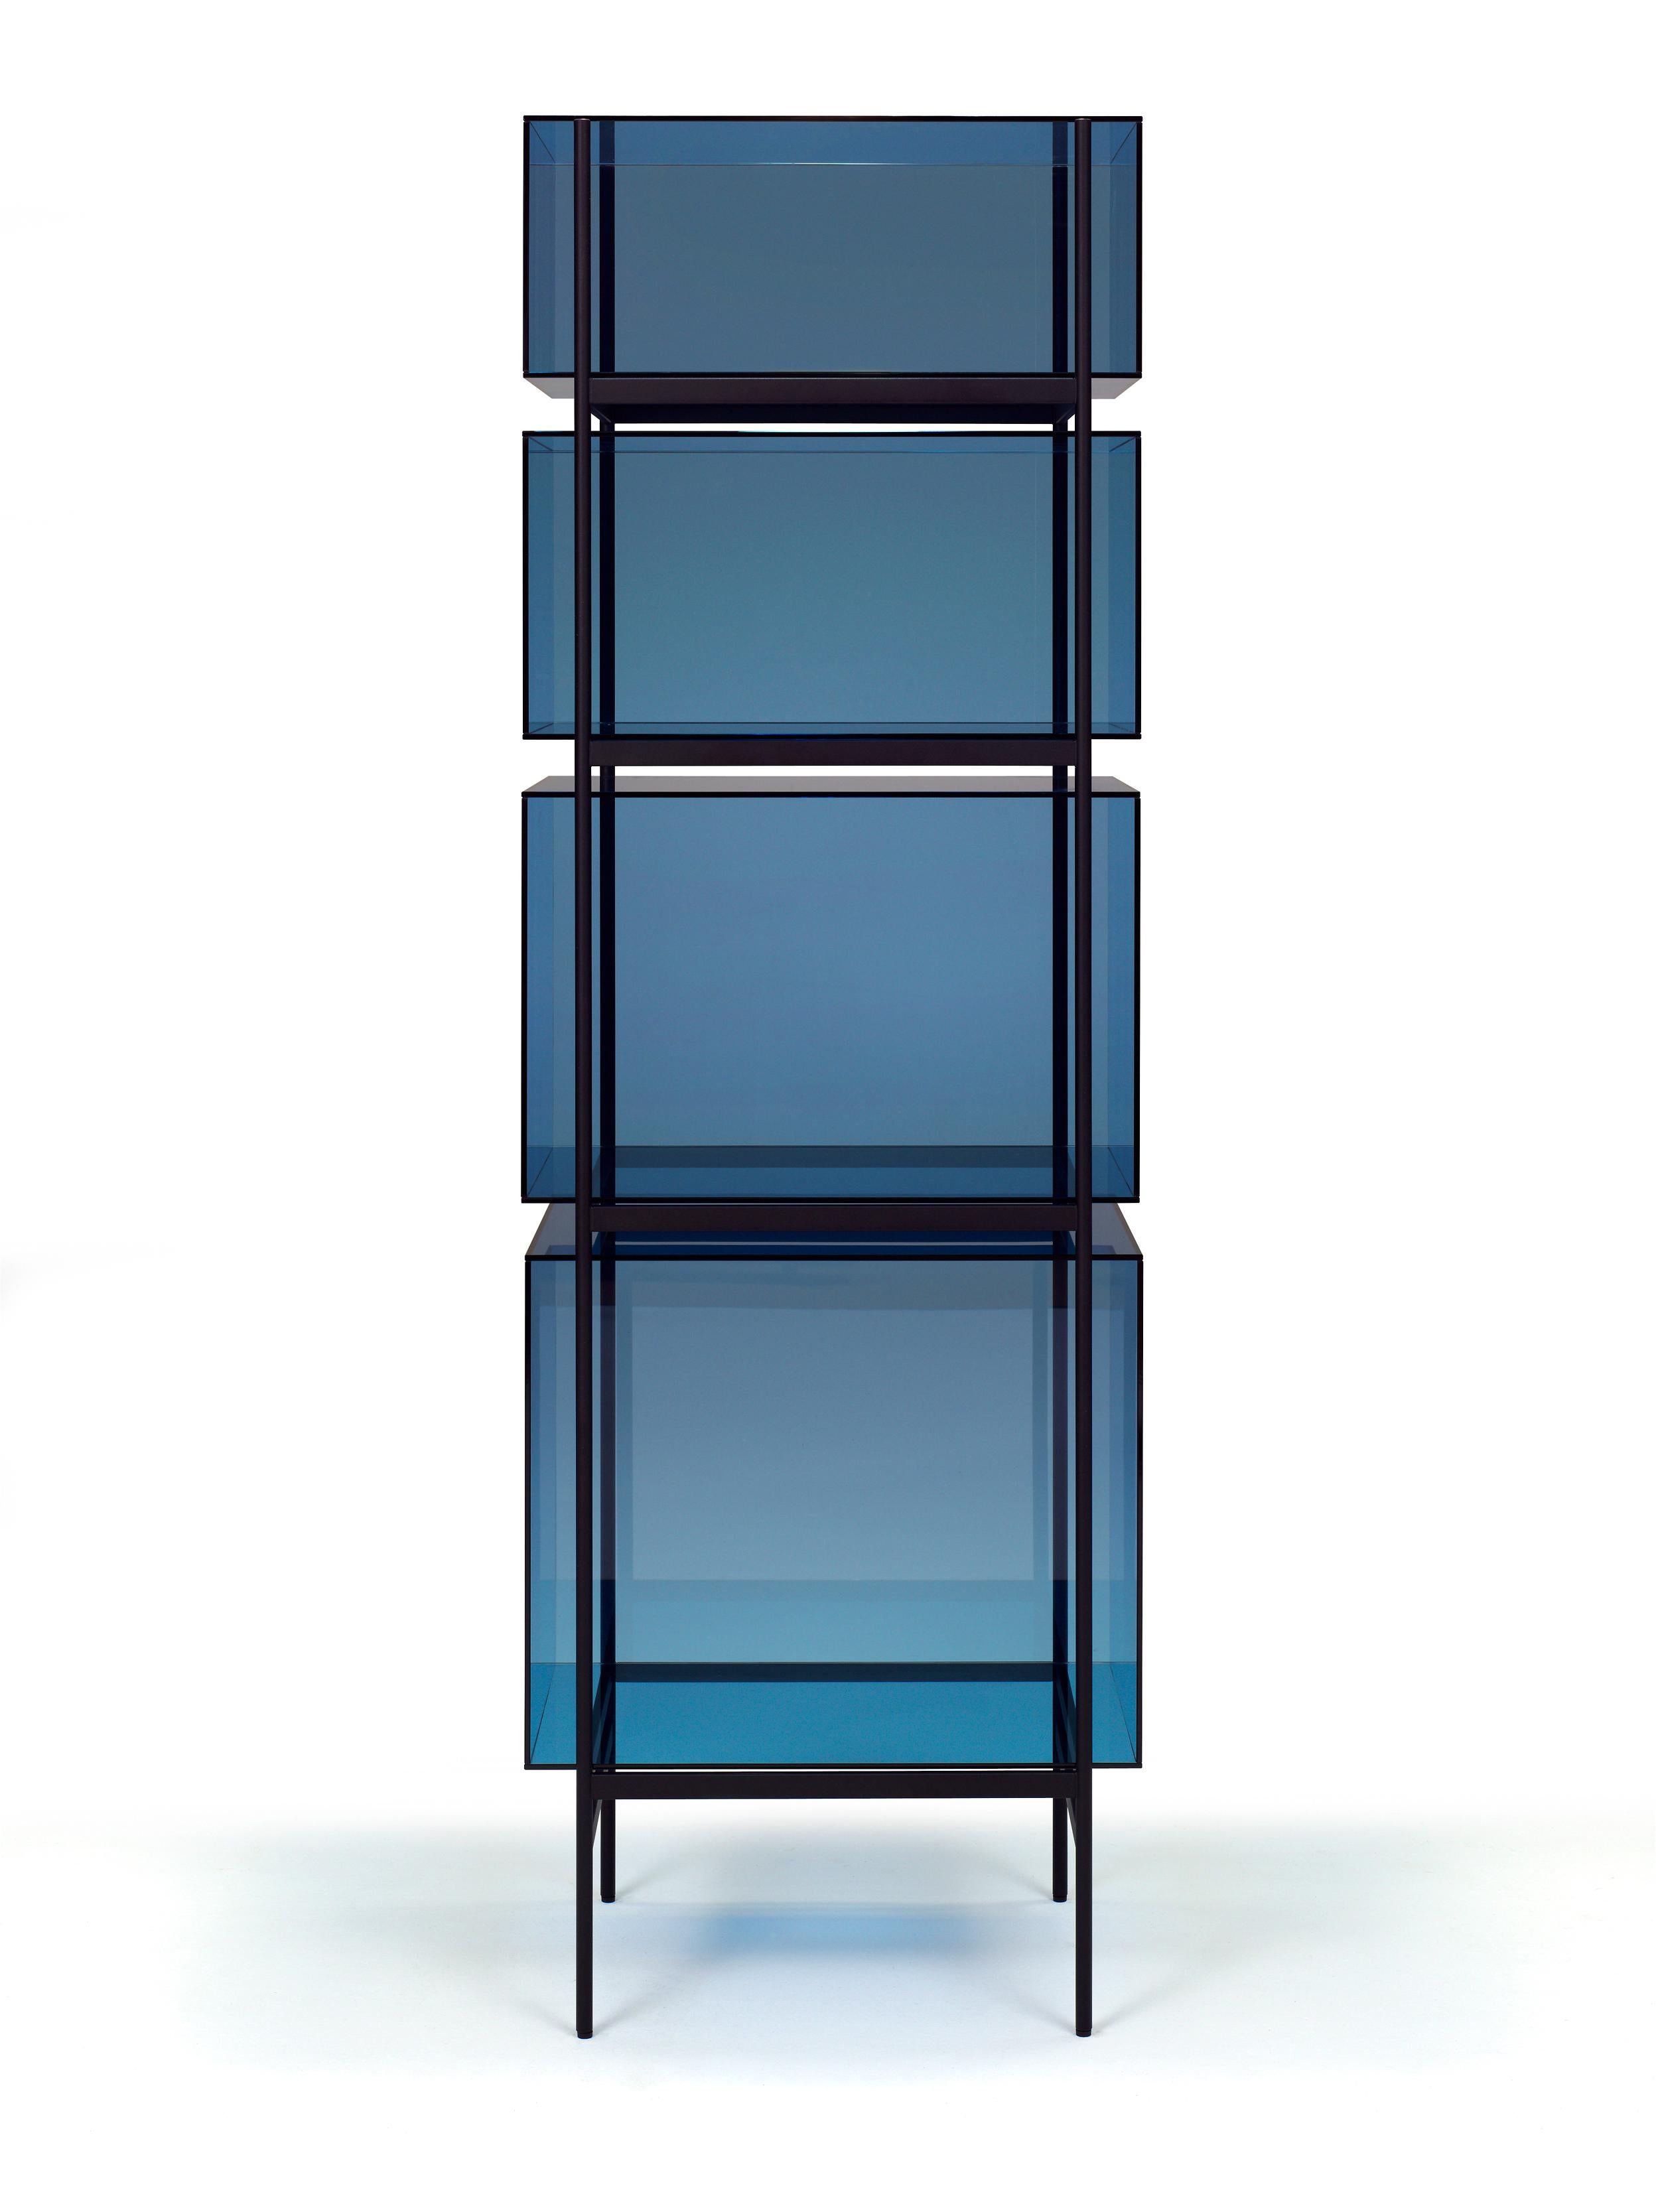 Lyn hoher blauer schwarzer schrank by Pulpo
Abmessungen: T60 x B45 x H185 cm
MATERIALIEN: Glas; pulverbeschichteter Stahl

Auch in verschiedenen Farben erhältlich. 

Das Studio Visser & Meijwaard beschreibt sein Konzept von lyn als 